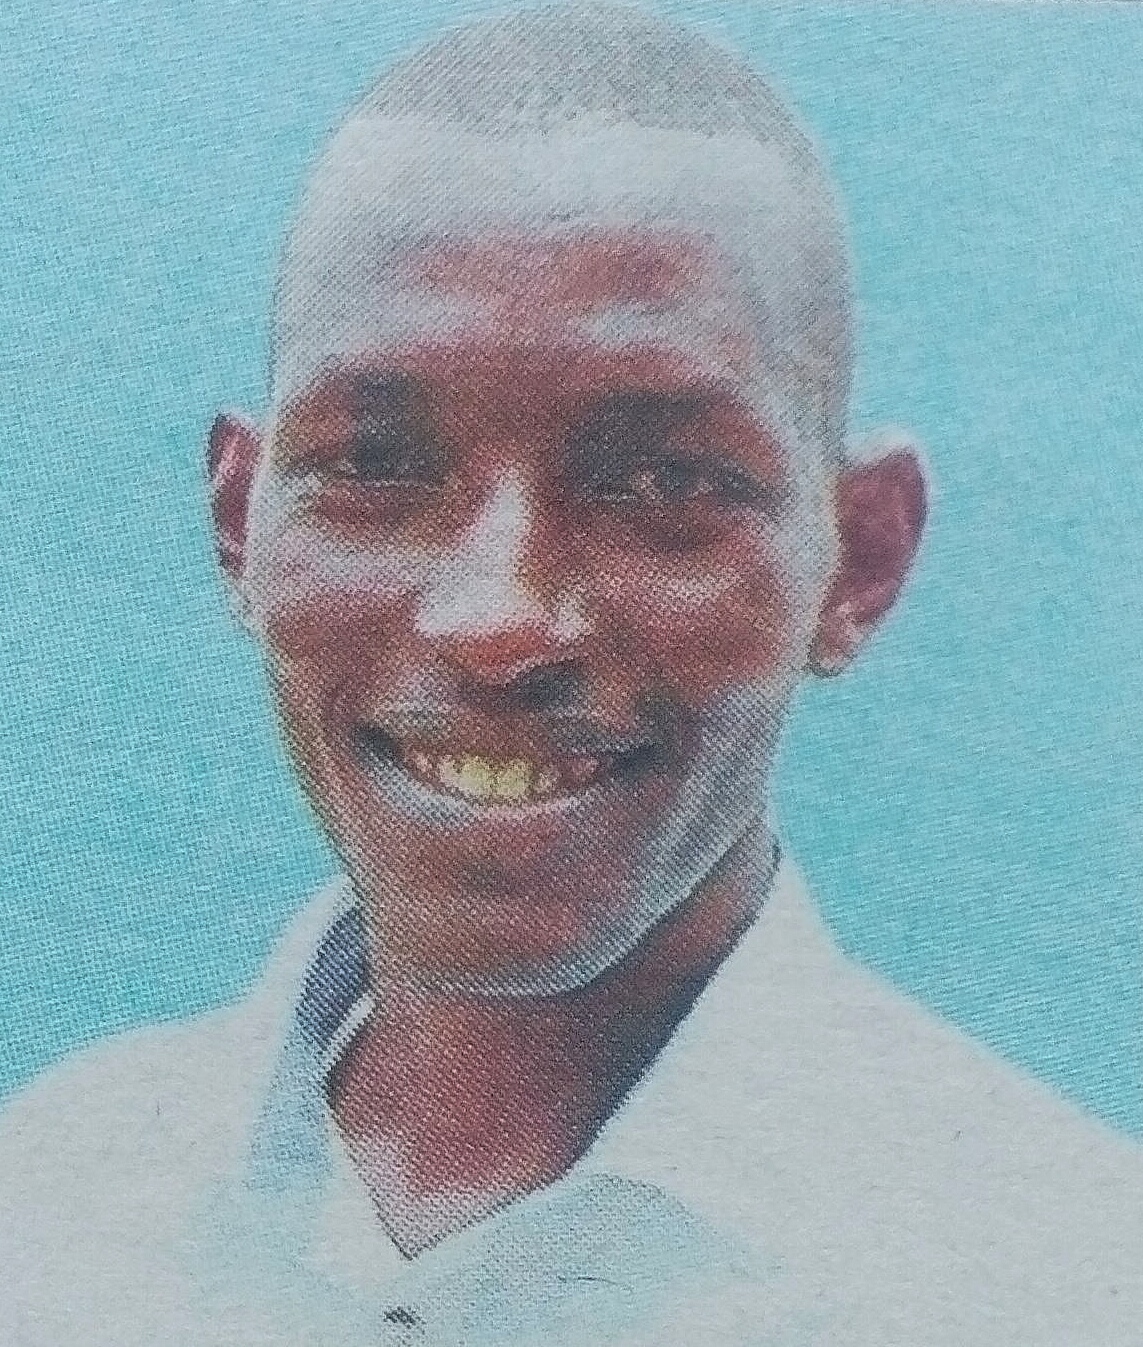 Obituary Image of Edward Kimathi